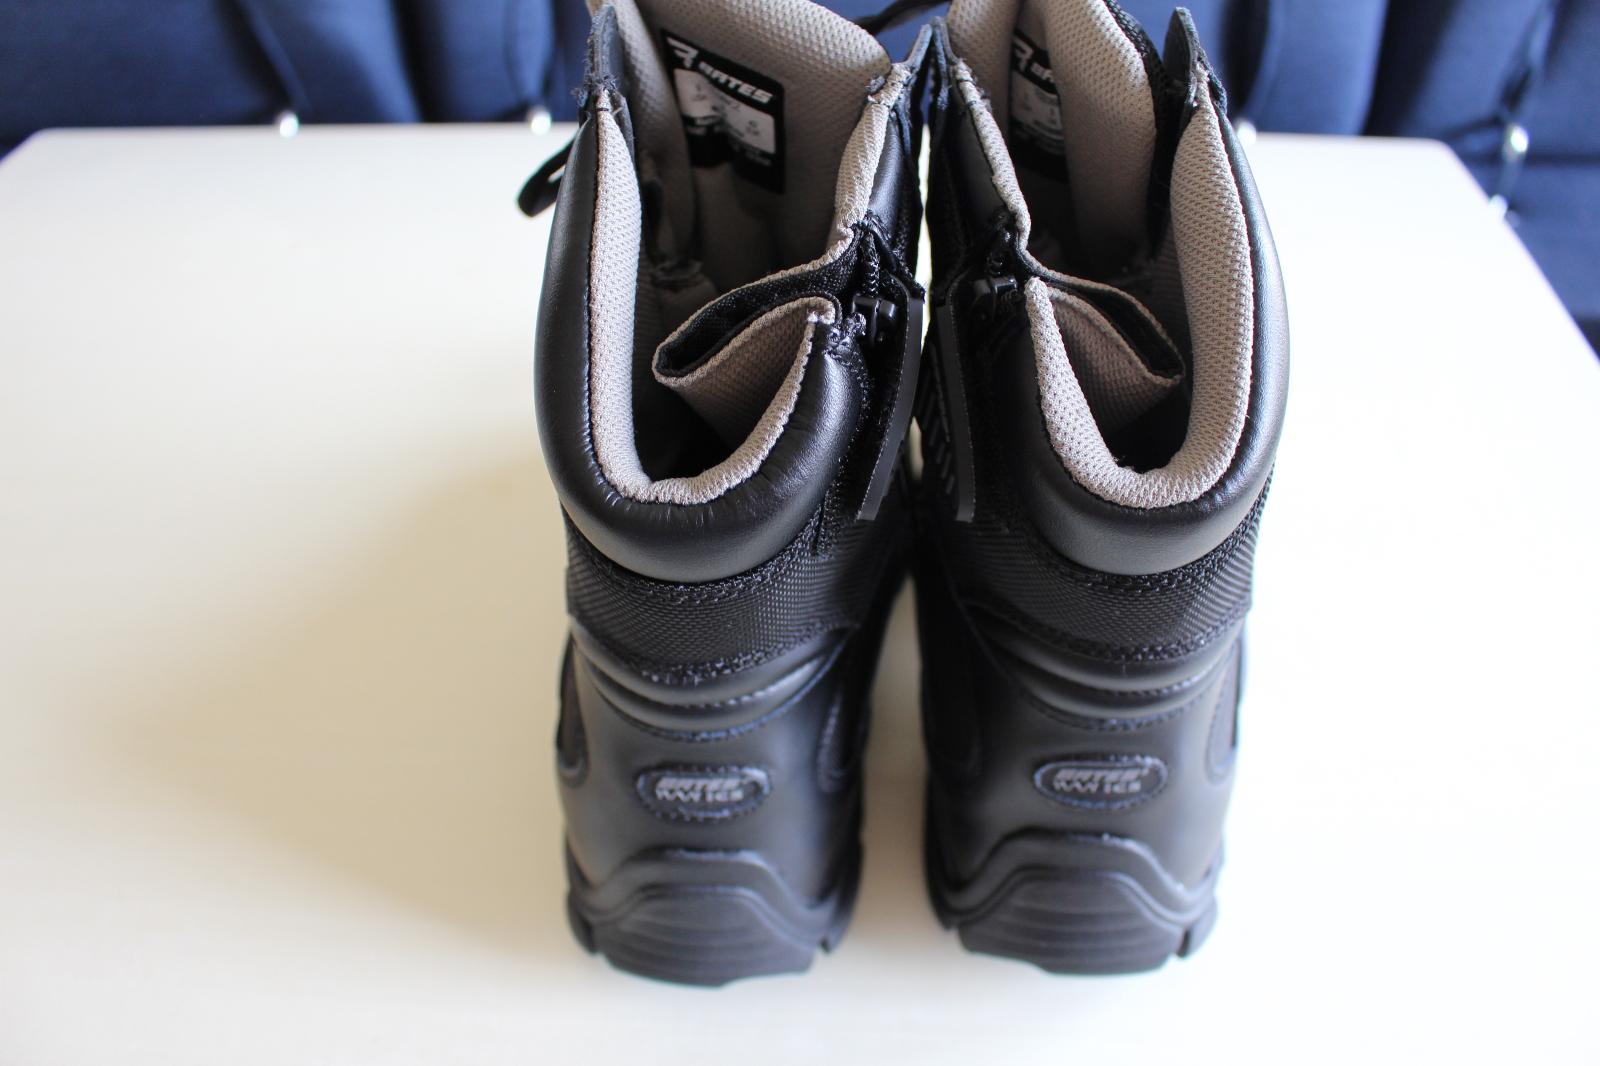 Vysoké boty/kanady BATES Delta-8 vel. 41 - Oblečenie, obuv a doplnky